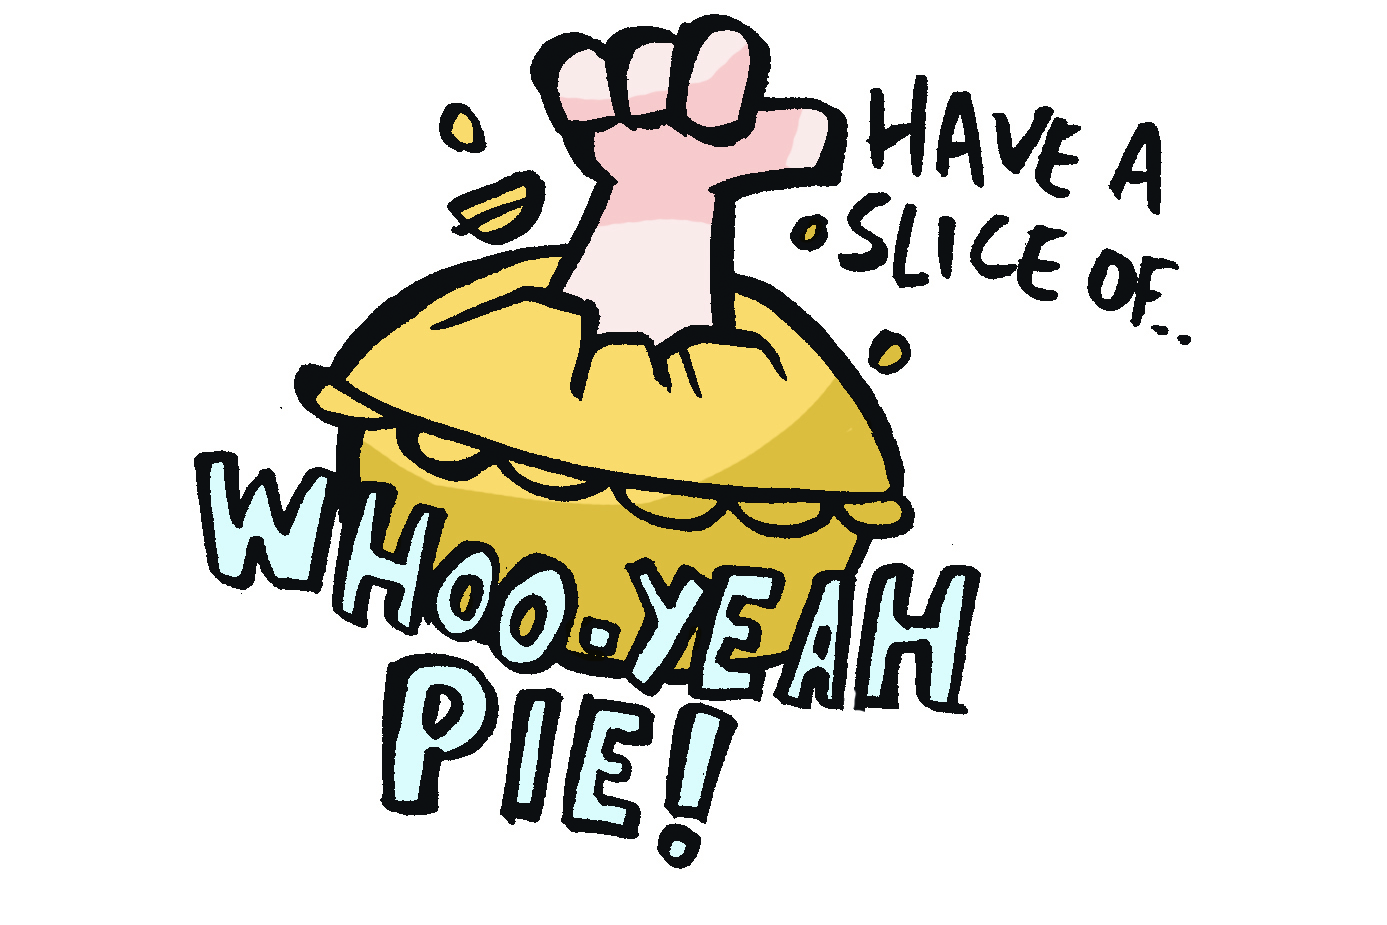 Whoo-yeah pie